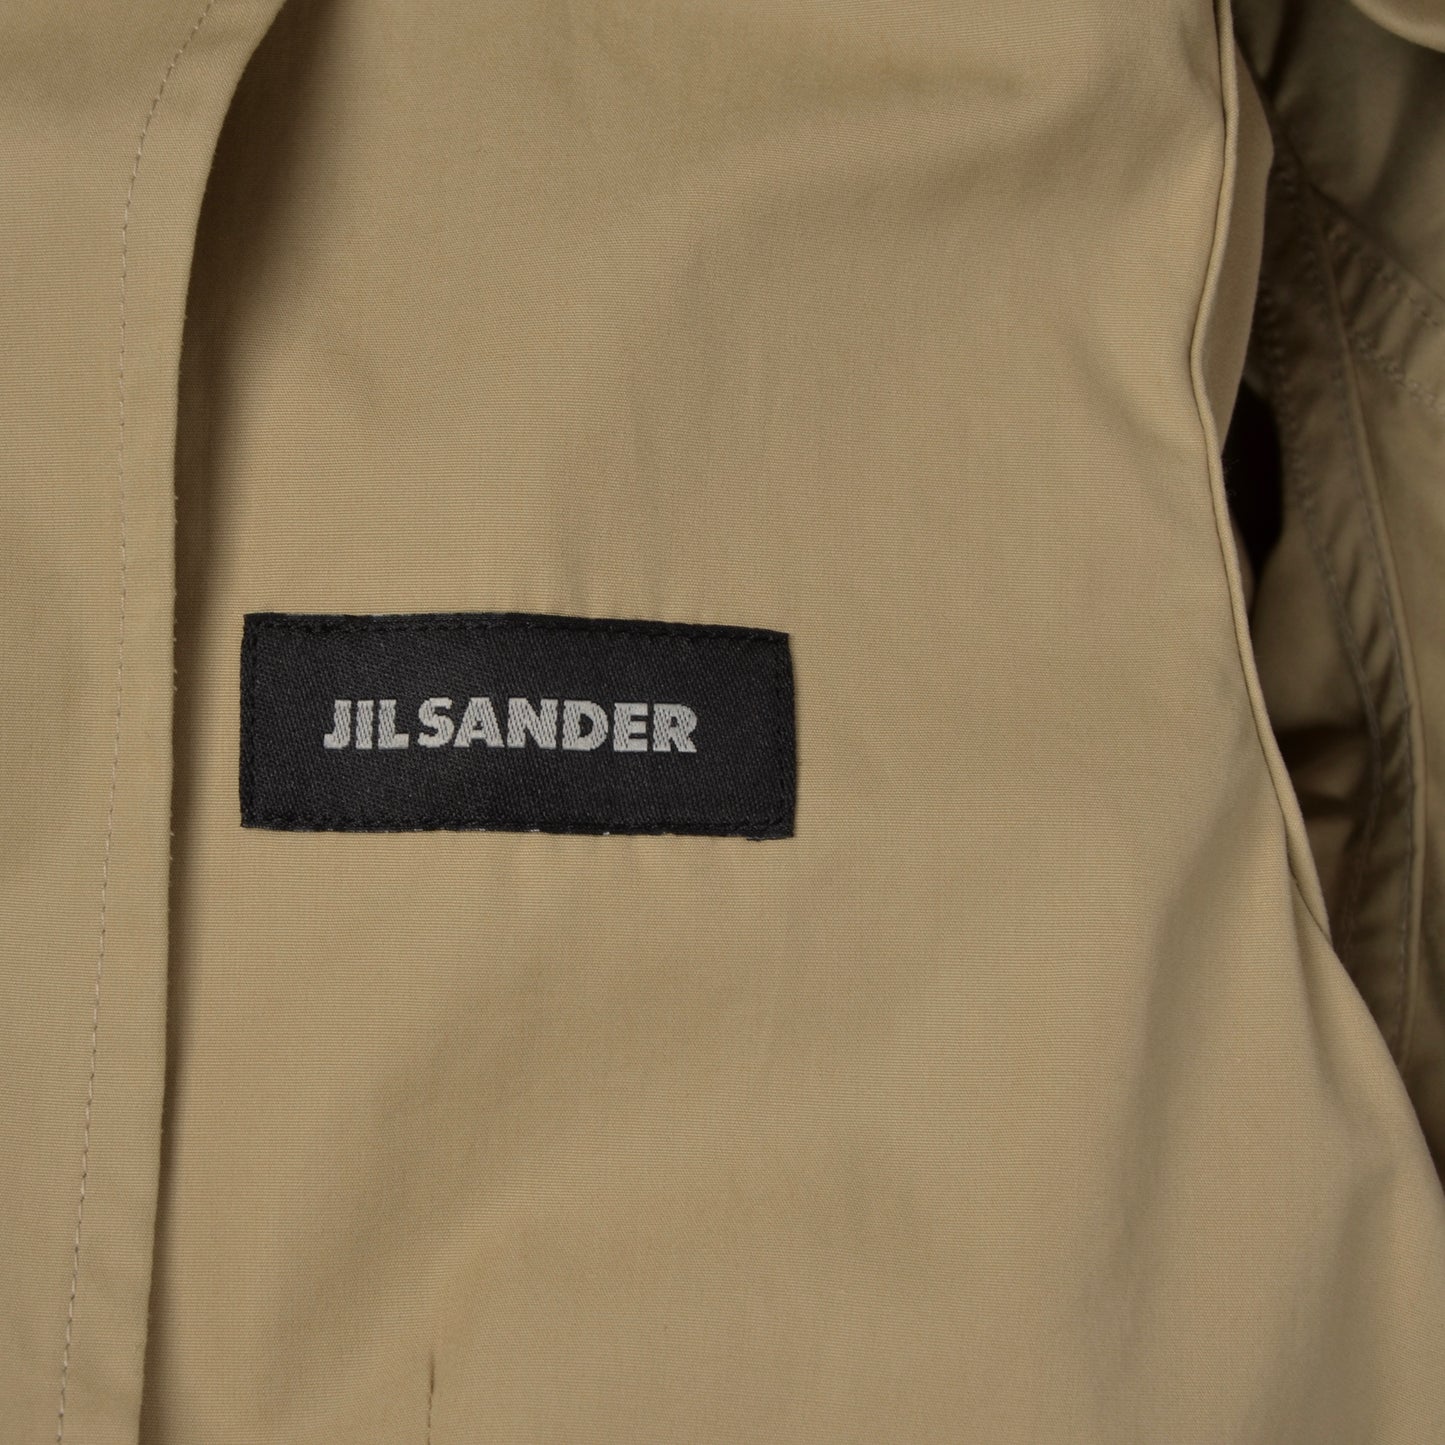 Jil Sander Cotton Jacket Size 52 - Tan